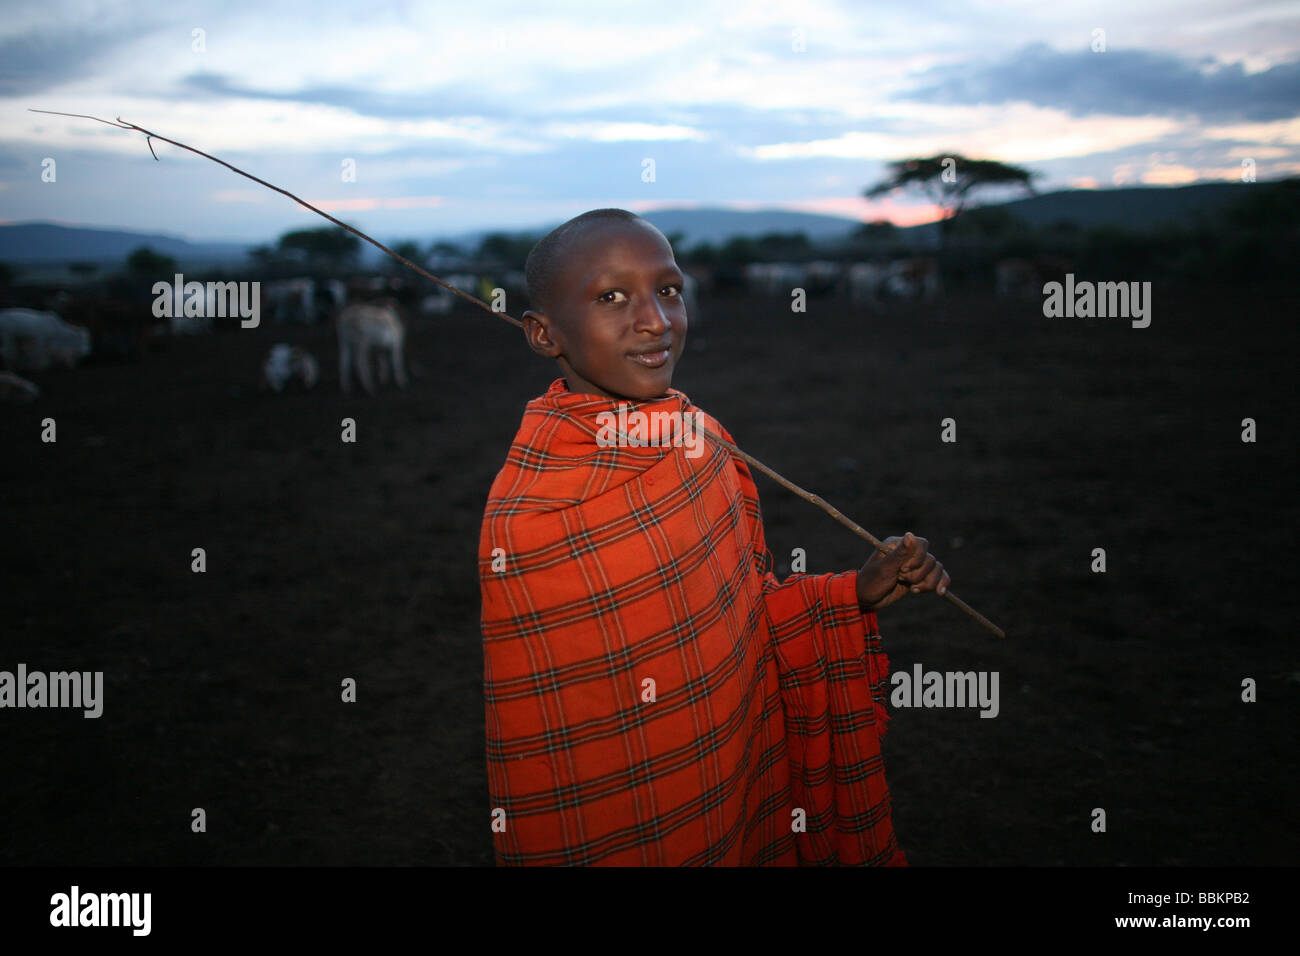 Ngoiroro ist ein Dorf mit 200 Einwohnern alle gehören zum Stamm Massai das Dorf liegt mitten im Rift Valley südlich von Nairobi vor der Grenze zu Tansania die Massai Leben sehr nah an der Natur und ihren Tieren Kühe und Ziegen sind wichtiger dann Geld für die Massai jede Familie besitzt rund 50 Kühen und 50 Ziegen ist die Hauptnahrung der Dorfbewohner, Fleisch und Milch sind die Frauen annehmen, um die Kühe zu melken, zweimal täglich und die kleinen Jungs haben zu betreuen, die Herde im Laufe des Tages beim grasen Stockfoto